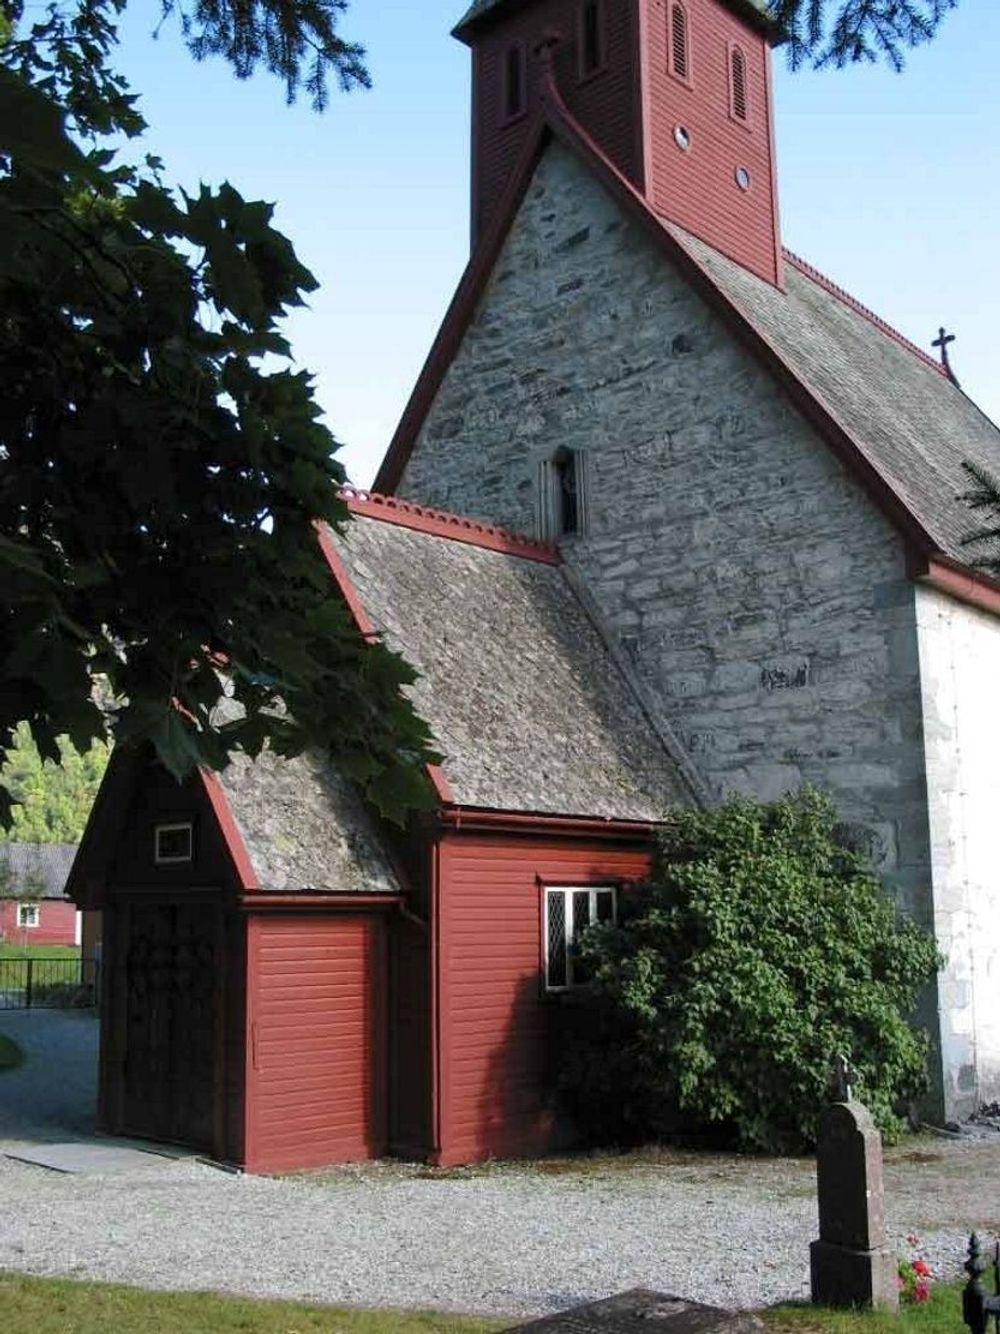 SKATT: Den flotte Dale kirke er et av de kirkebyggene som nå går inn i en nasjonal oversikt over kirkelige kulturskatter. FOTO: NORGES TURISTRÅD